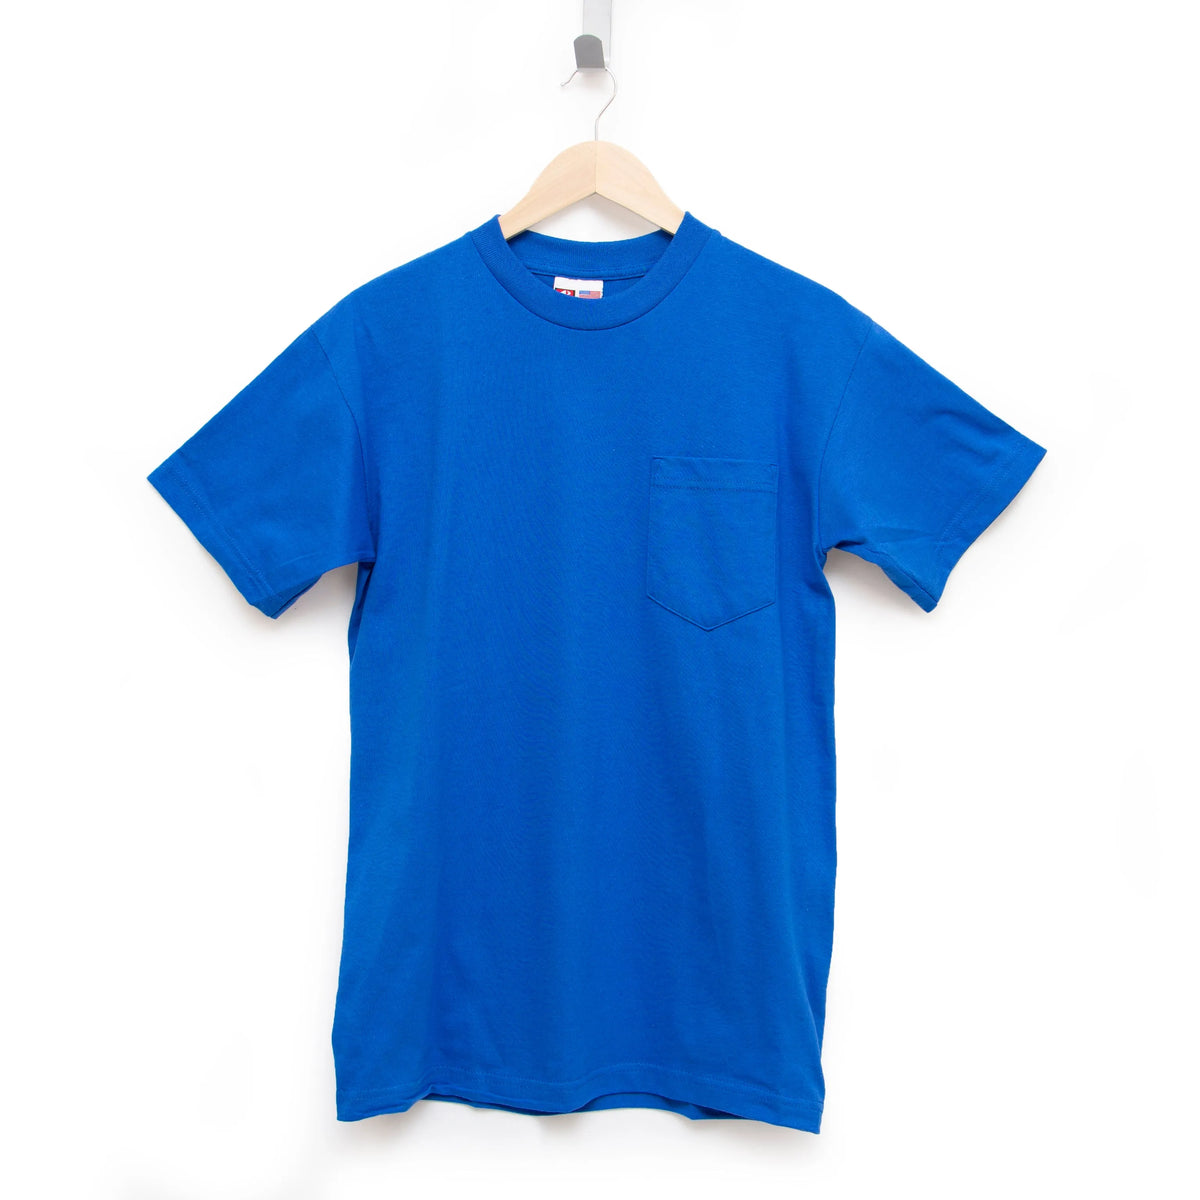 plain dark blue t shirt